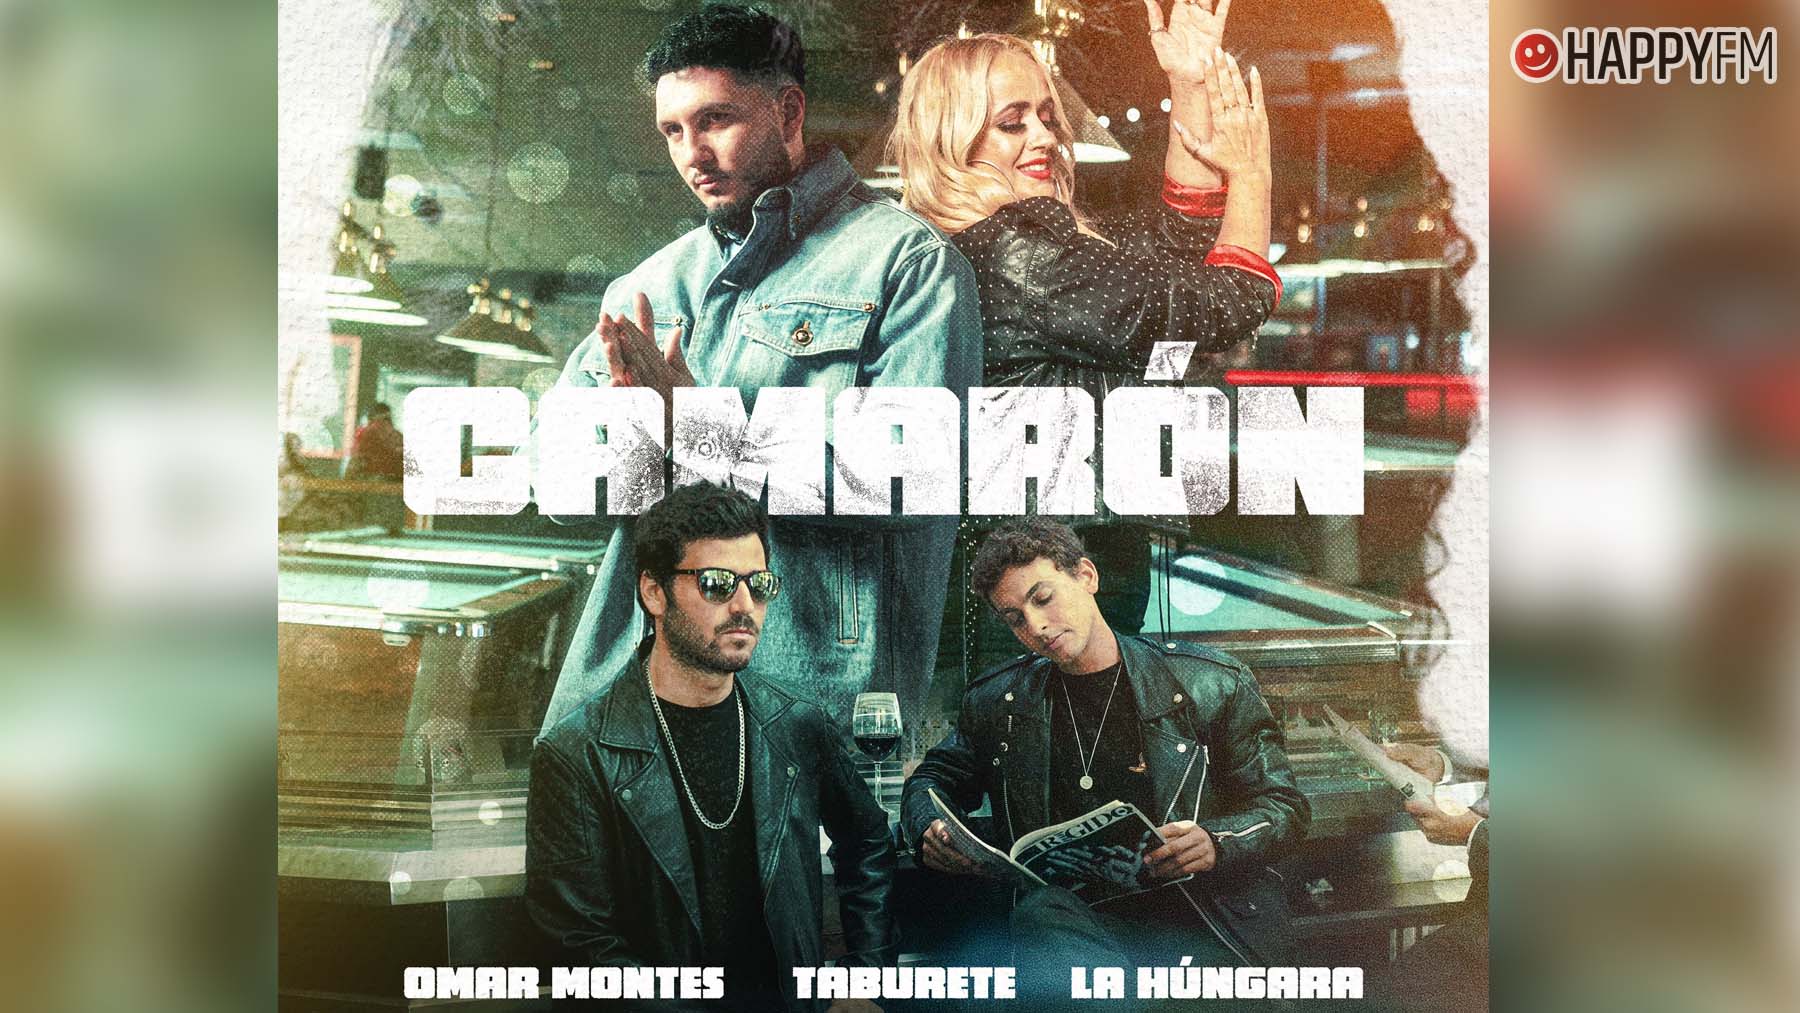 ‘Camarón’ es la nueva canción estrenada este viernes por el cantante urbano Omar Montes junto a Taburete y La Húngara.